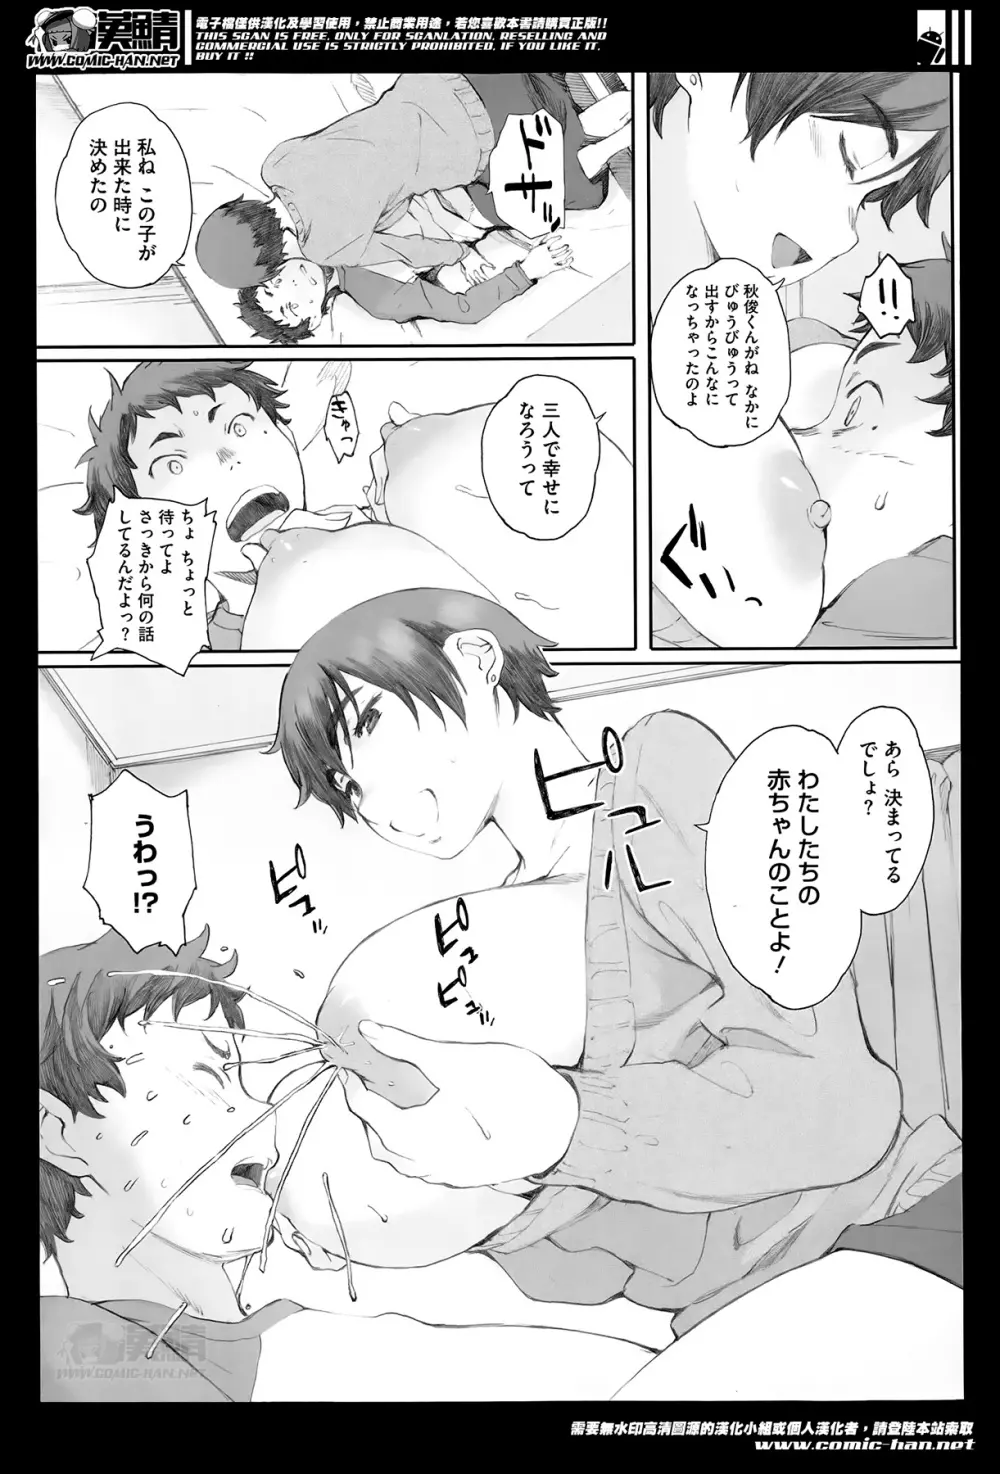 Kamakiri no su Ch.01-02 47ページ